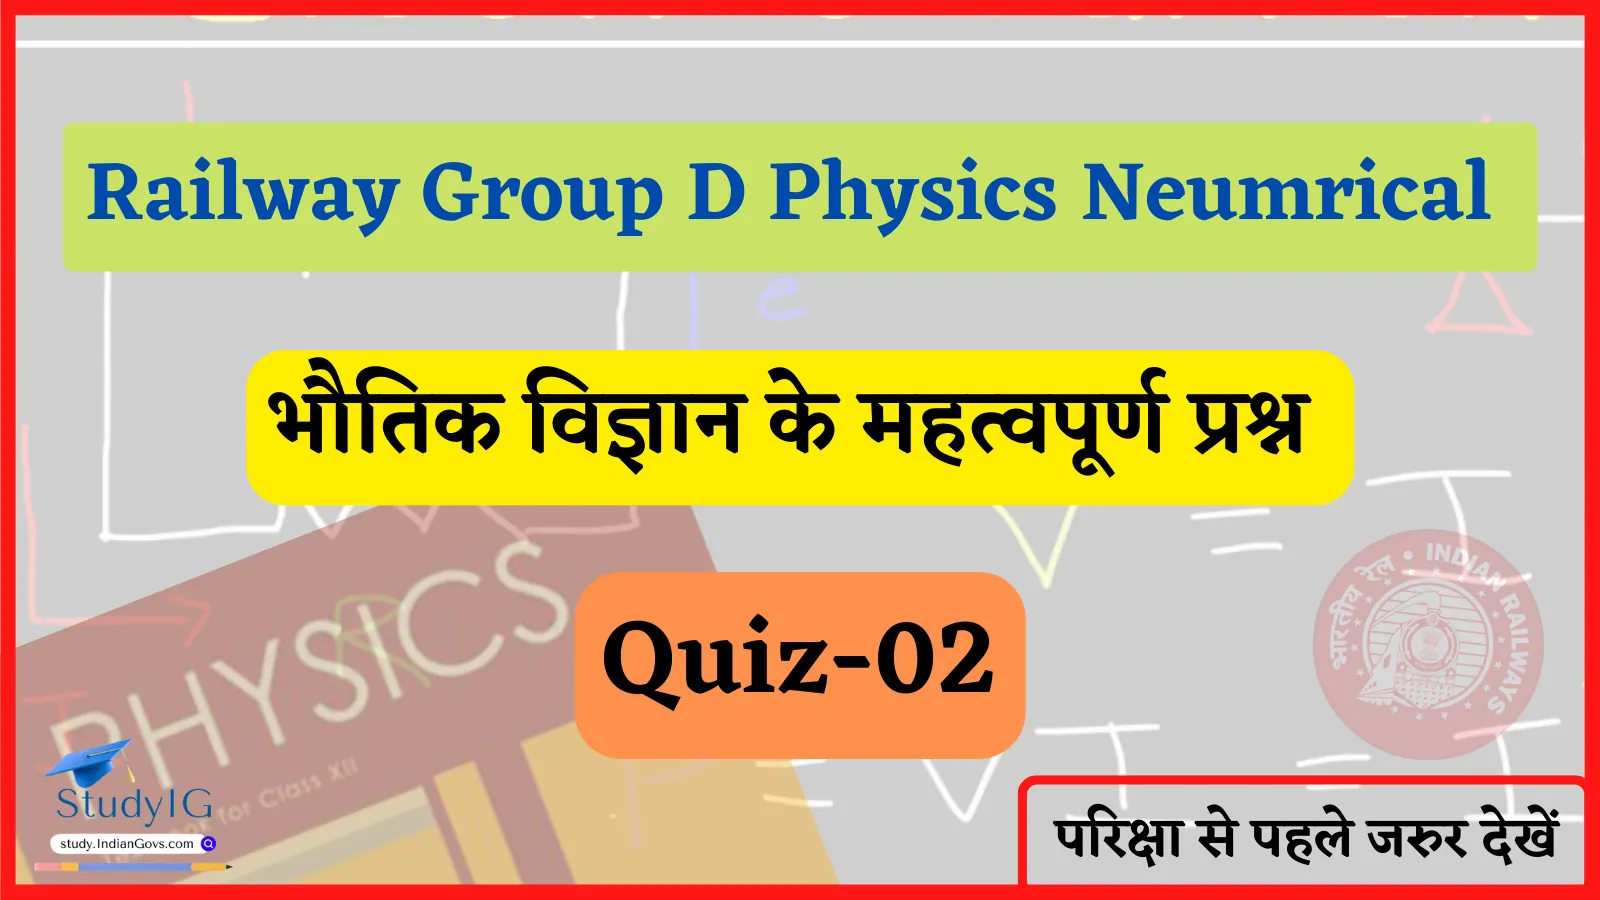 Railway Group D Physics Numerical quiz 02